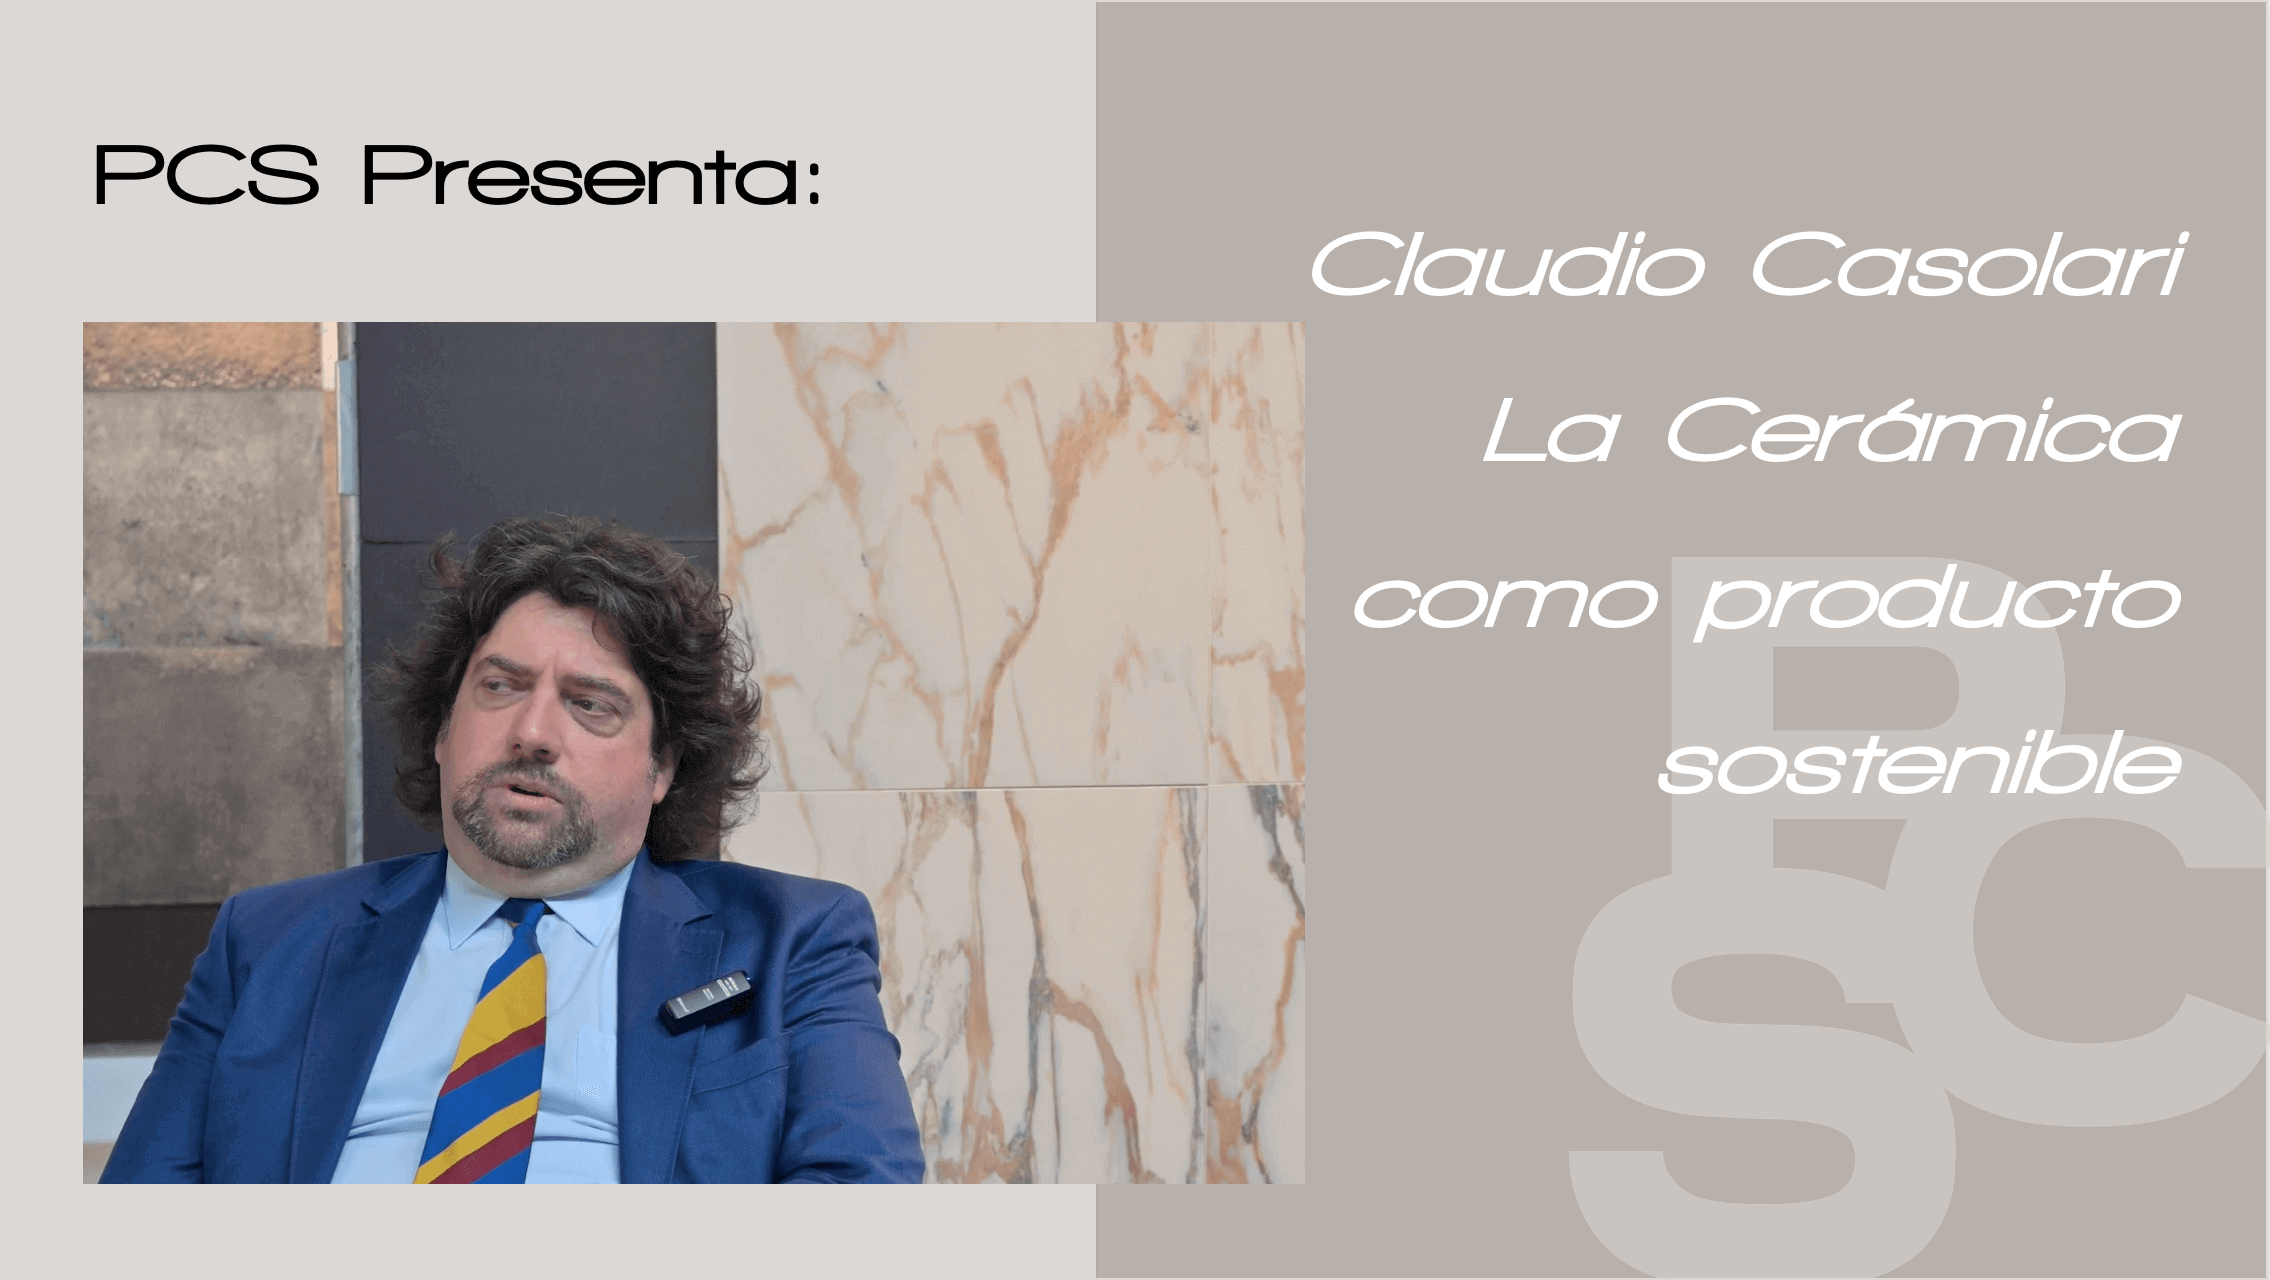 Claudio Casolari ceramica sostenible